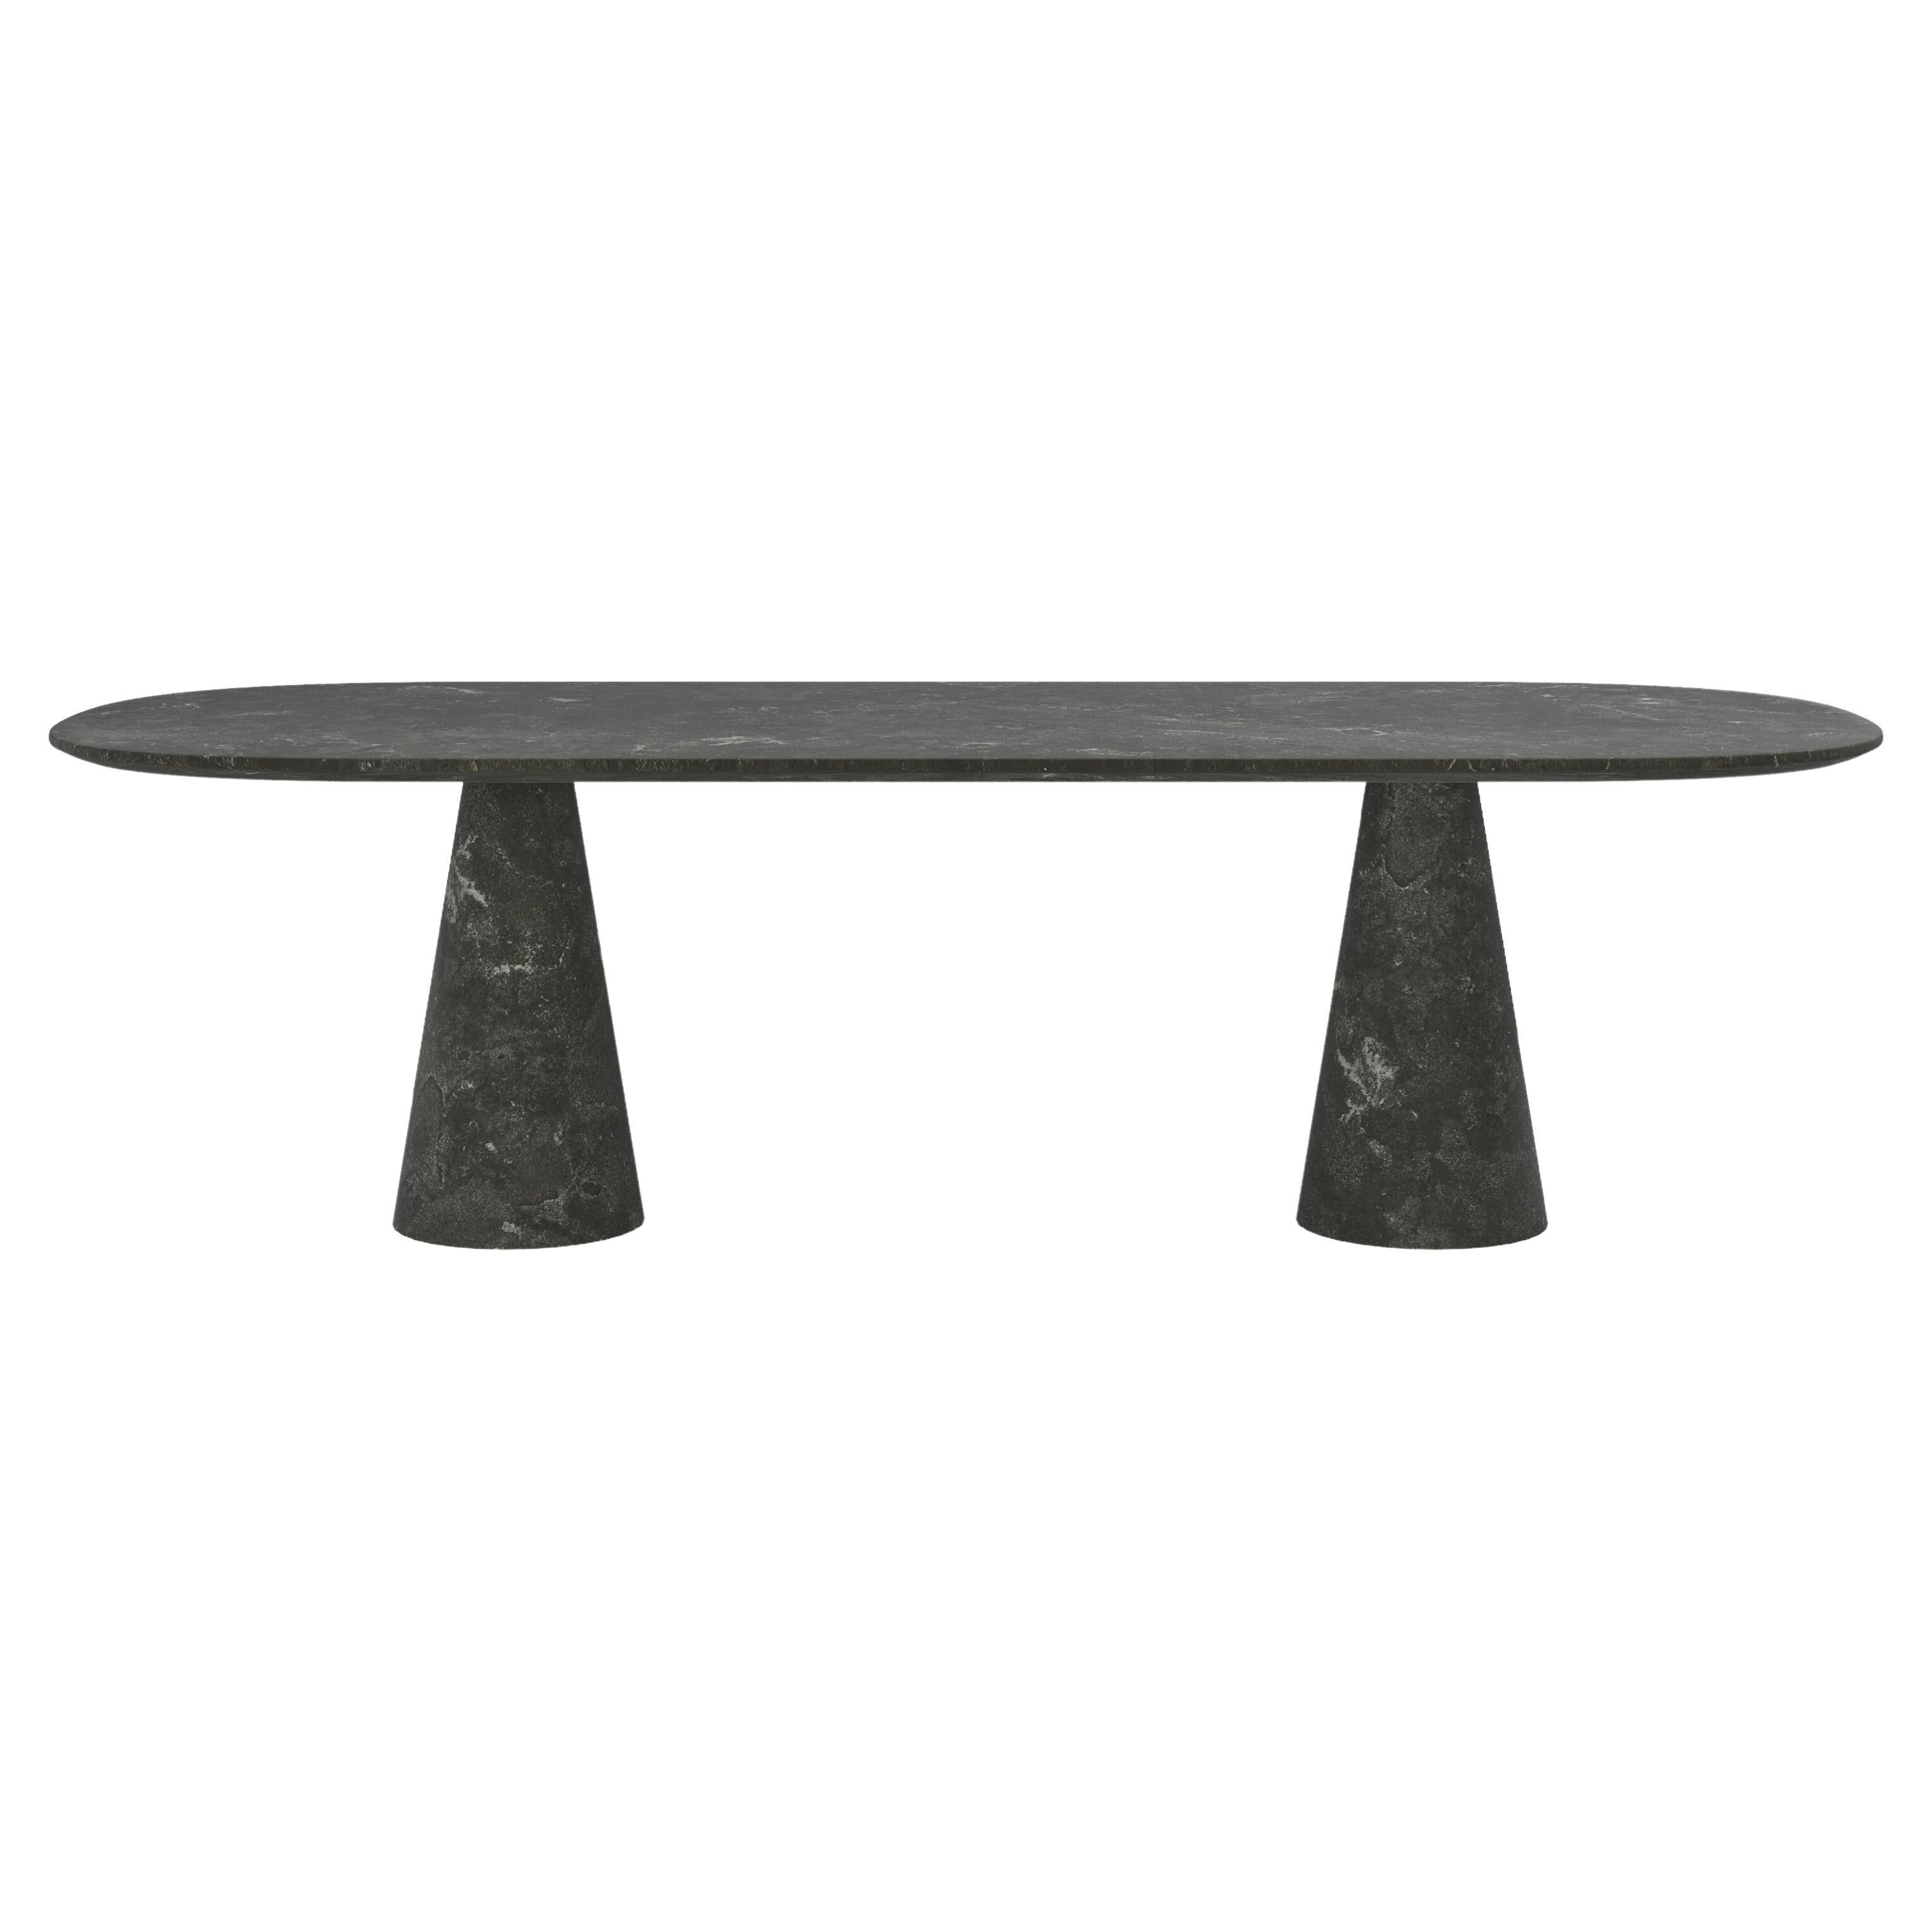 FORM(LA) Cono Oval Dining Table 96”L x 42”W x 30”H Nero Petite Granite For Sale